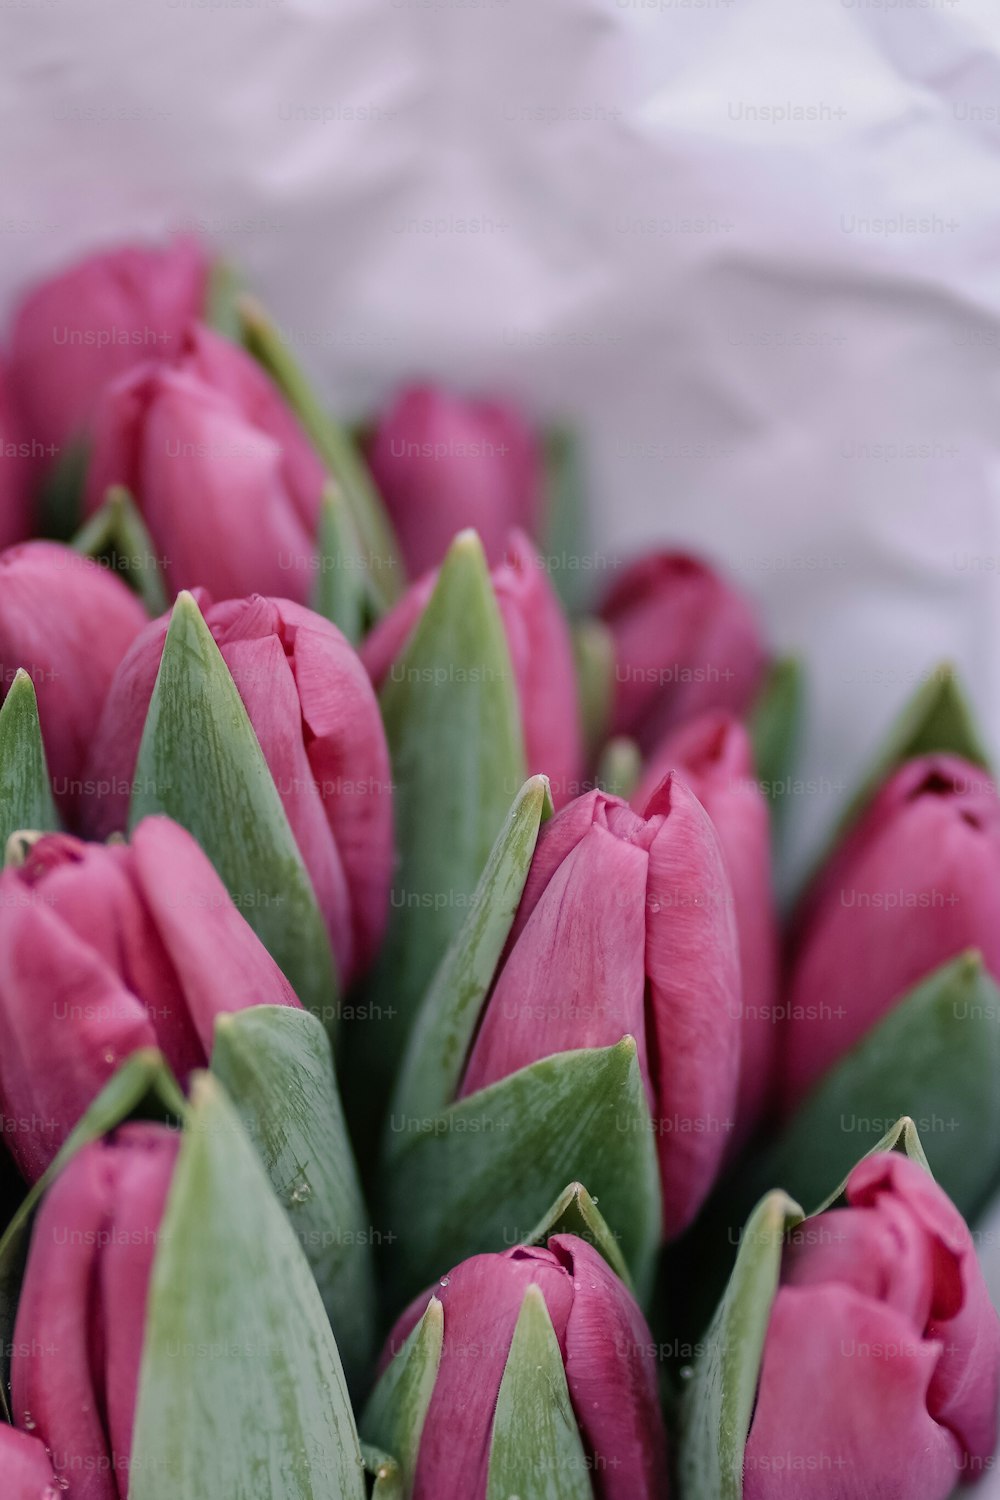 un manojo de tulipanes rosados con hojas verdes